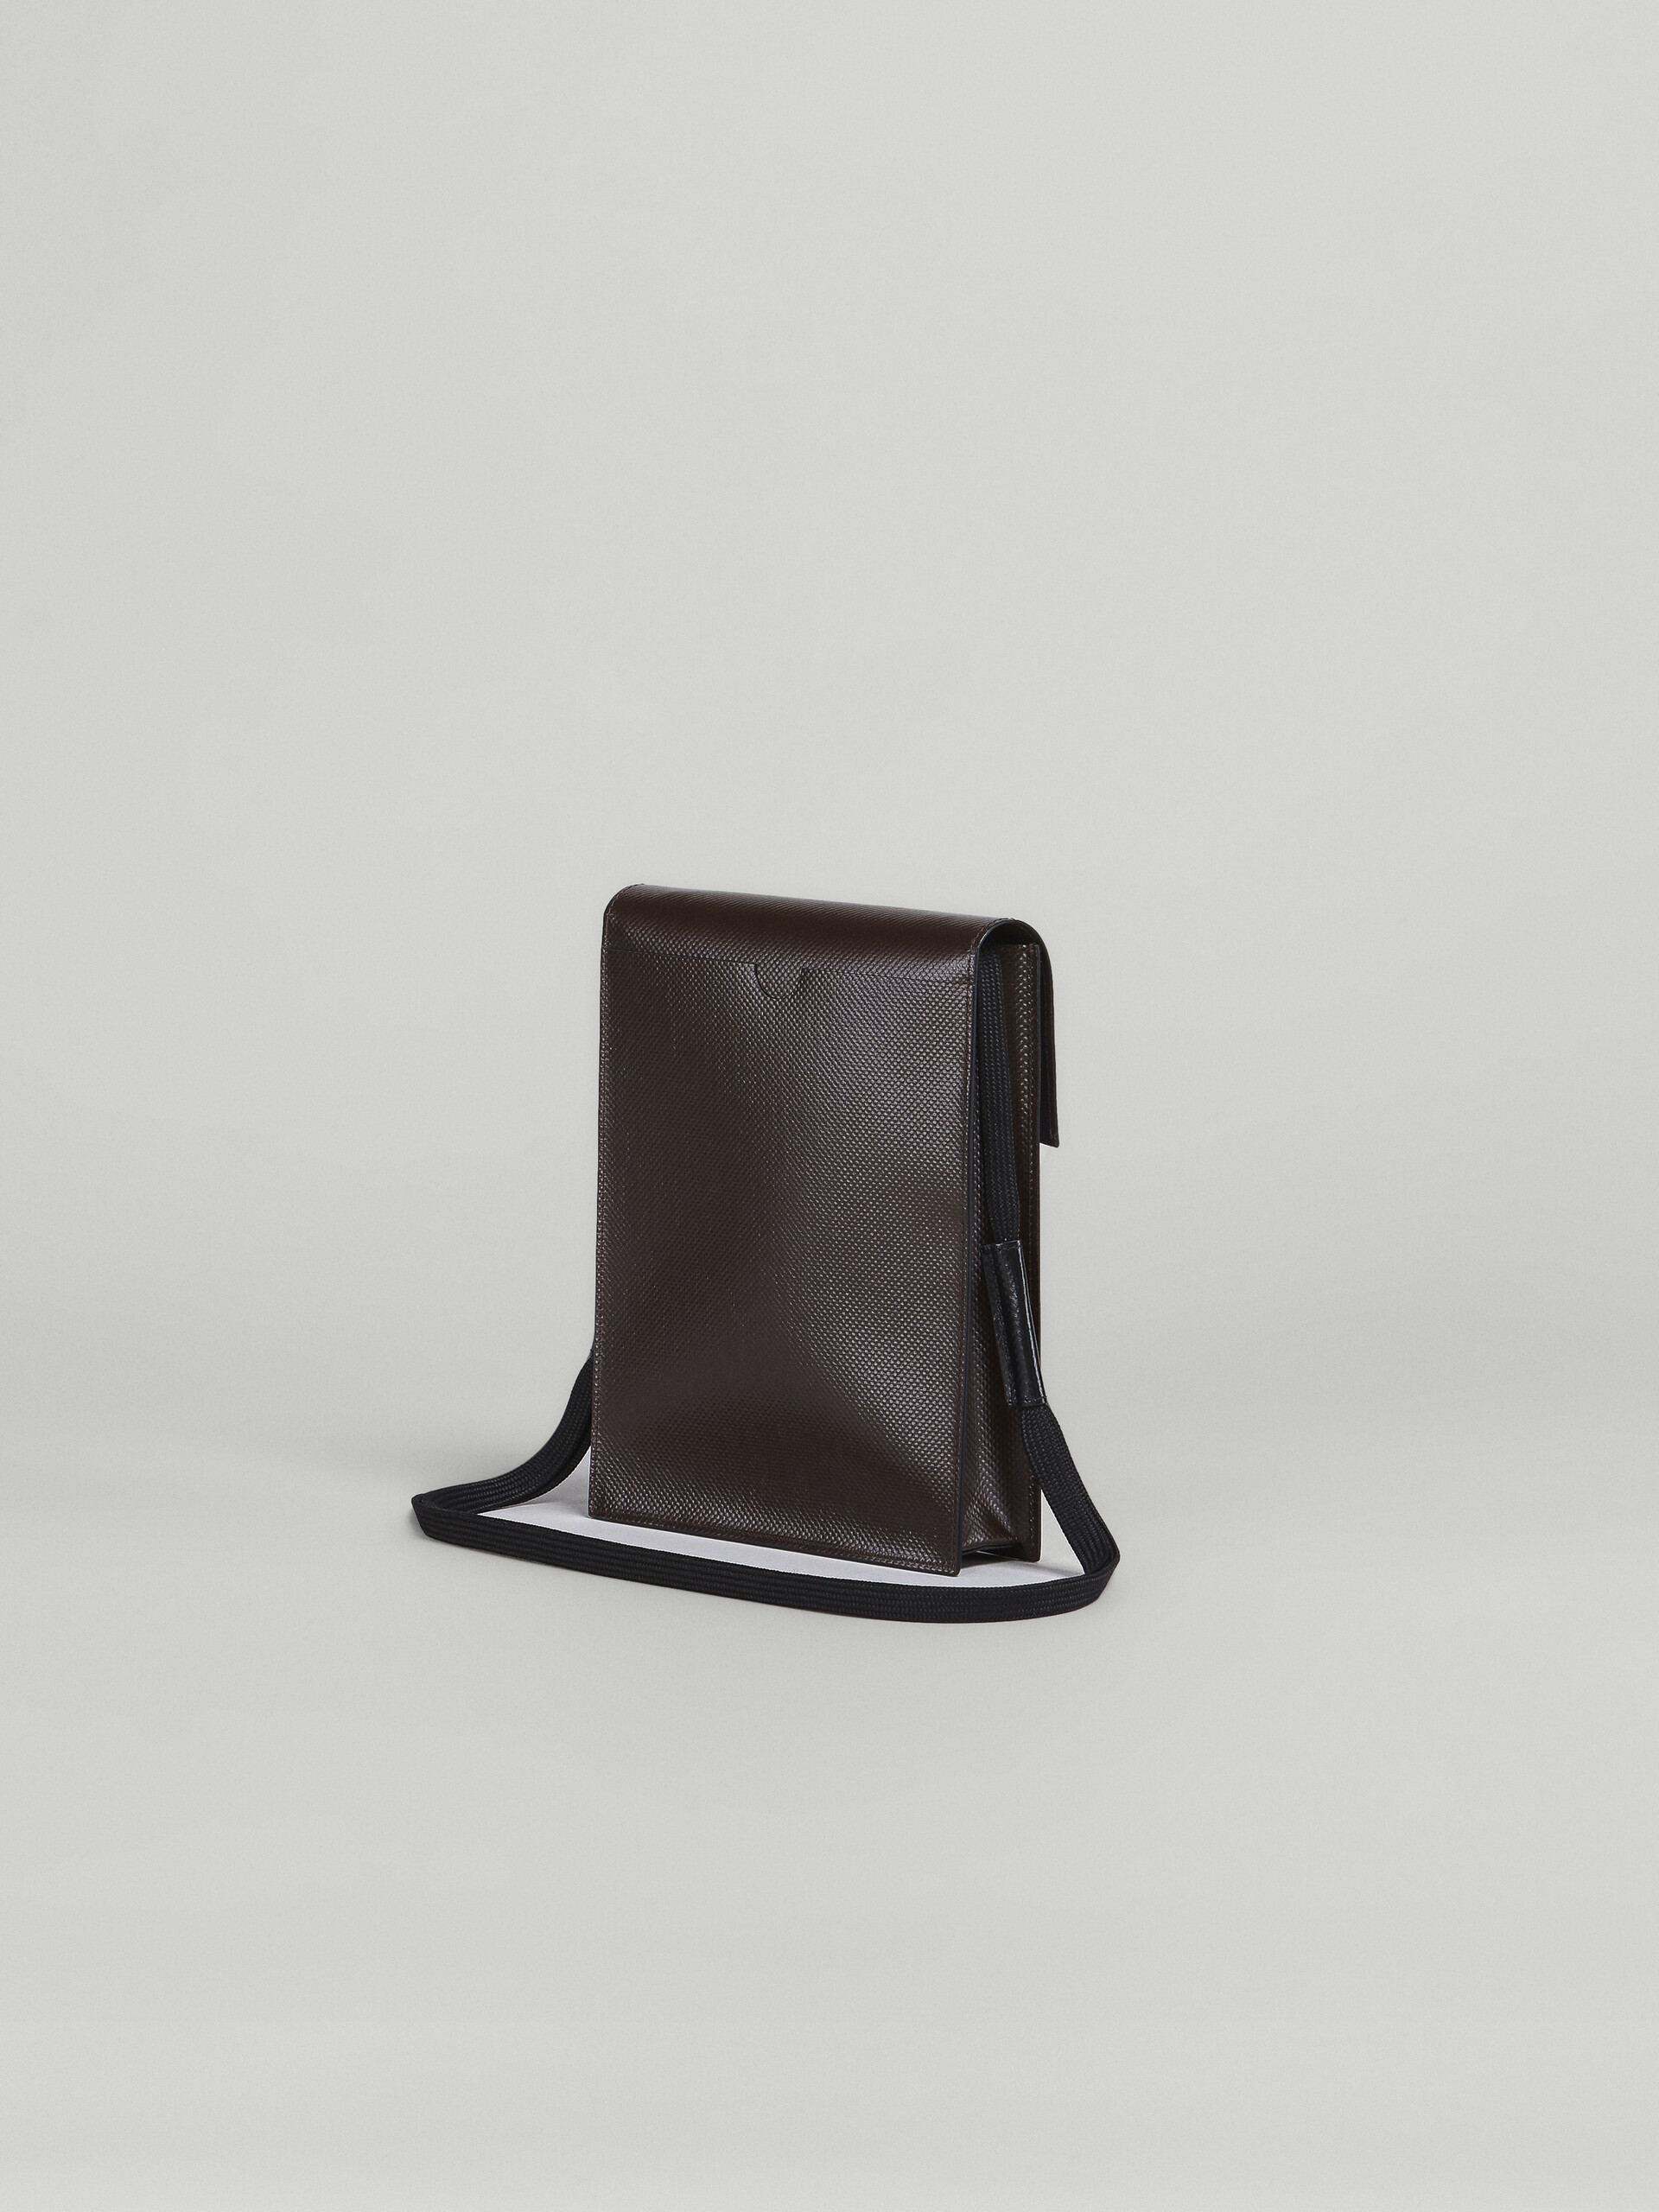 Sky blue and brown TRIBECA messenger bag - Shoulder Bags - Image 2